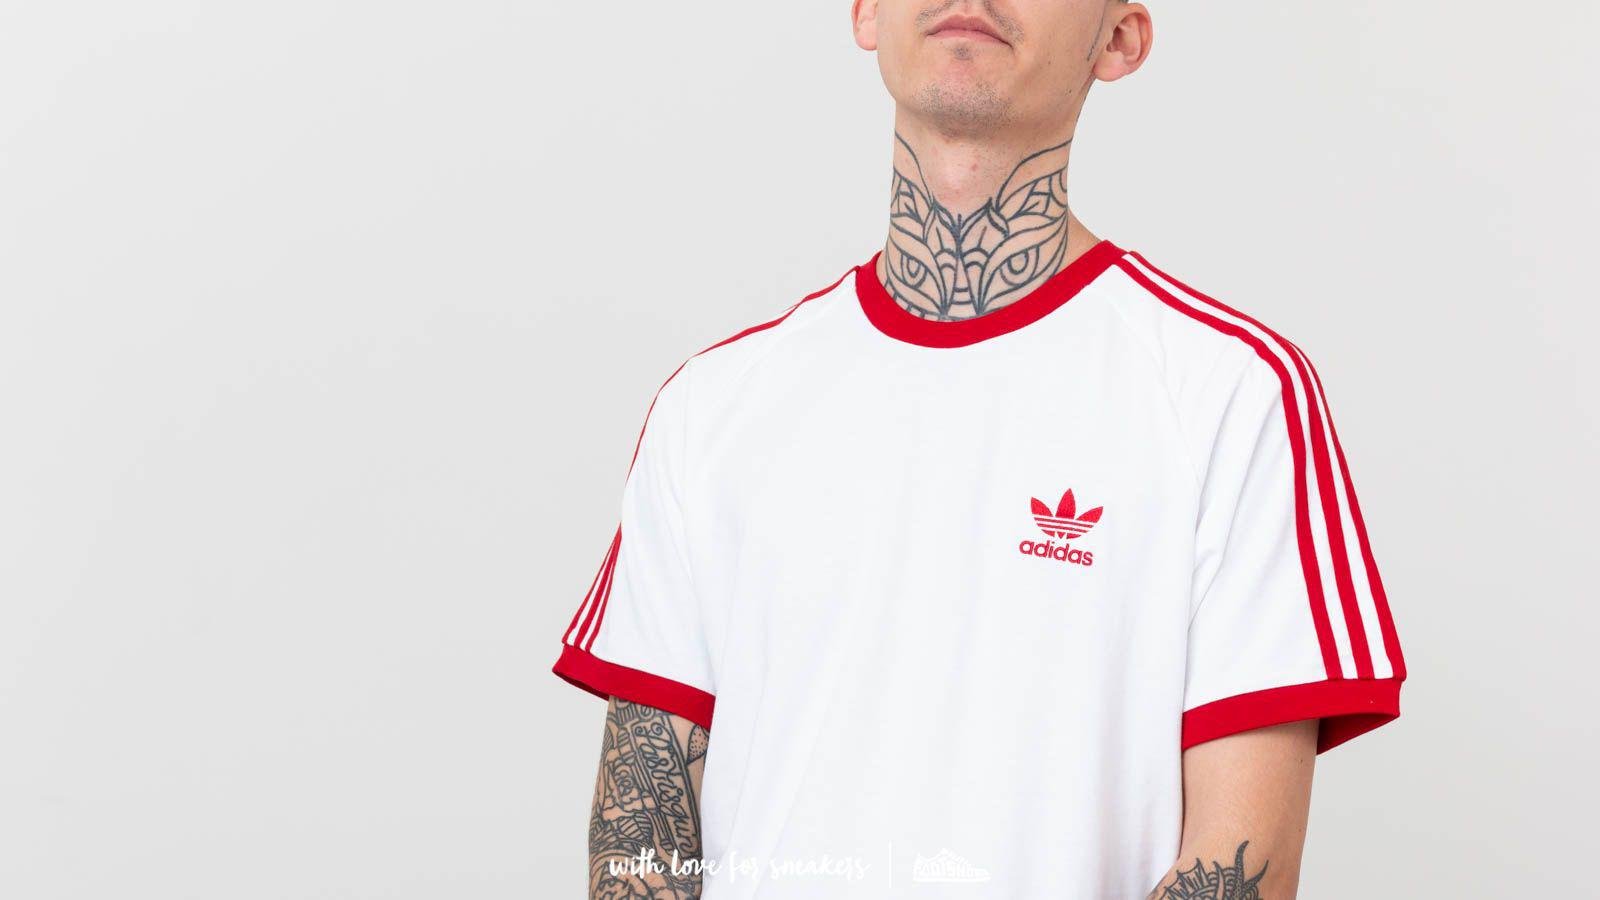 adidas Originals STRIPES TEE UNISEX - T-shirt imprimé - red/rouge